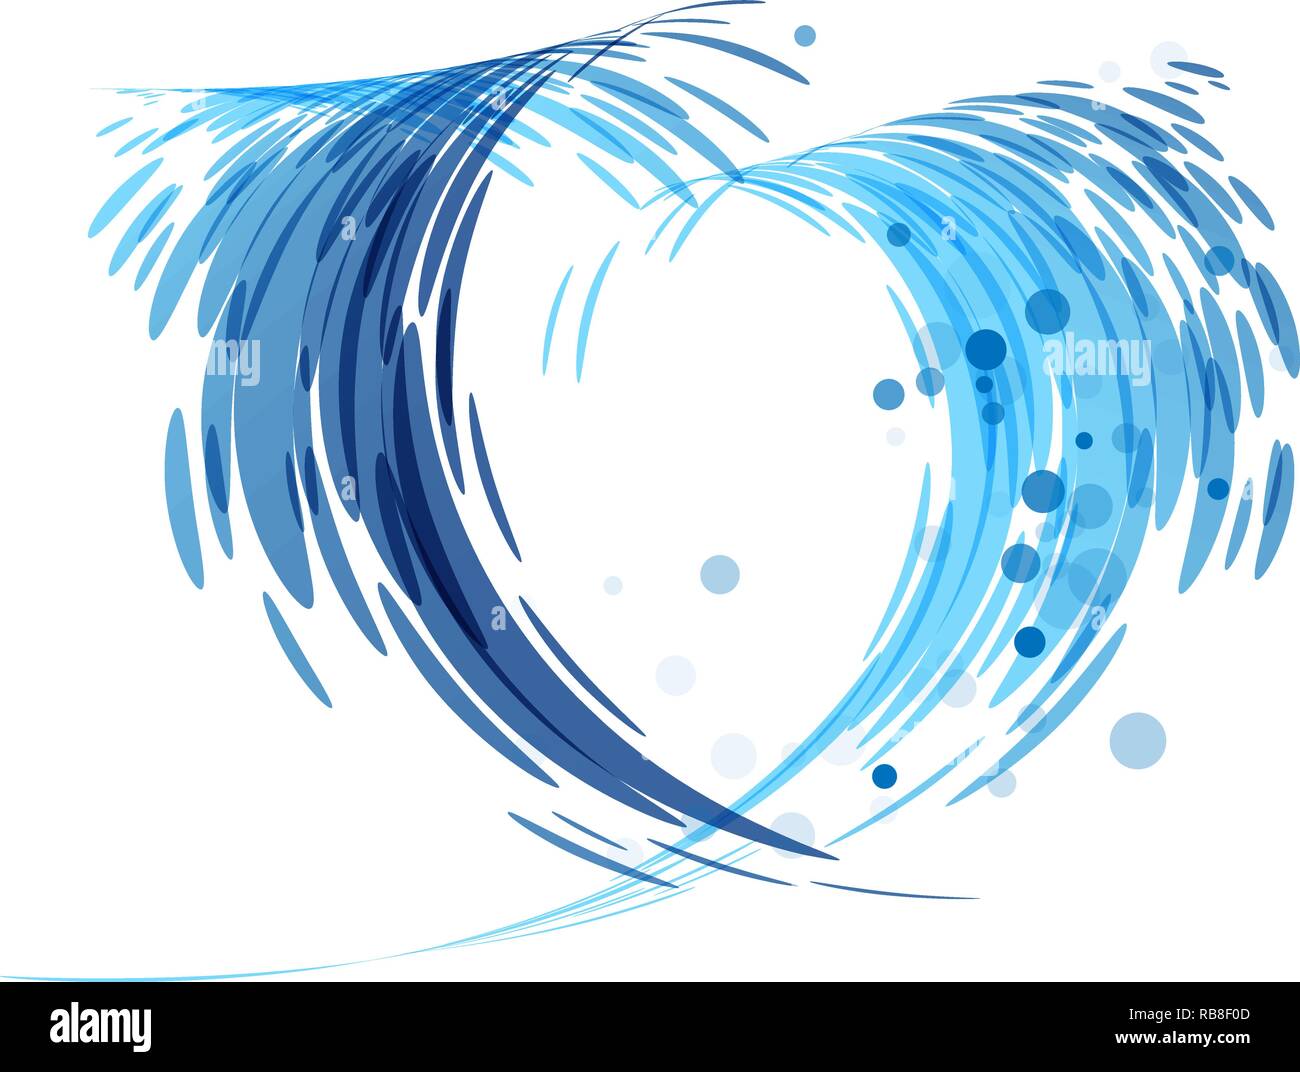 Les éclaboussures d'eau en forme de cœur isolé sur fond blanc Illustration de Vecteur